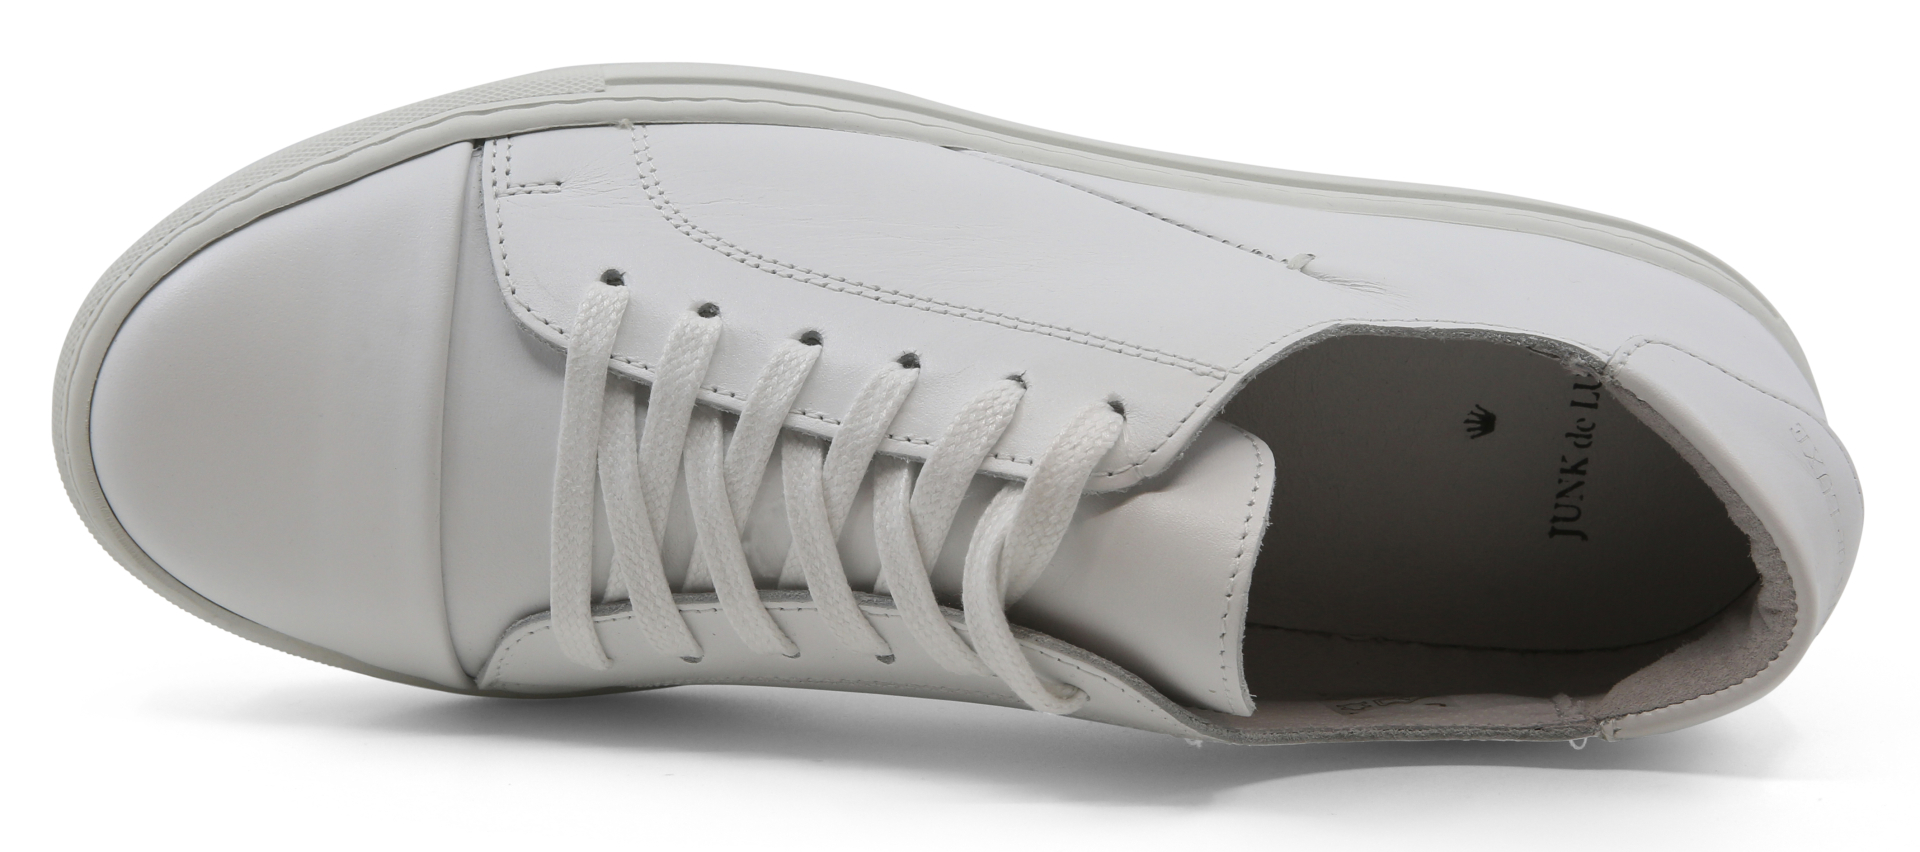 Junk de Luxe Sneakers hvid / white